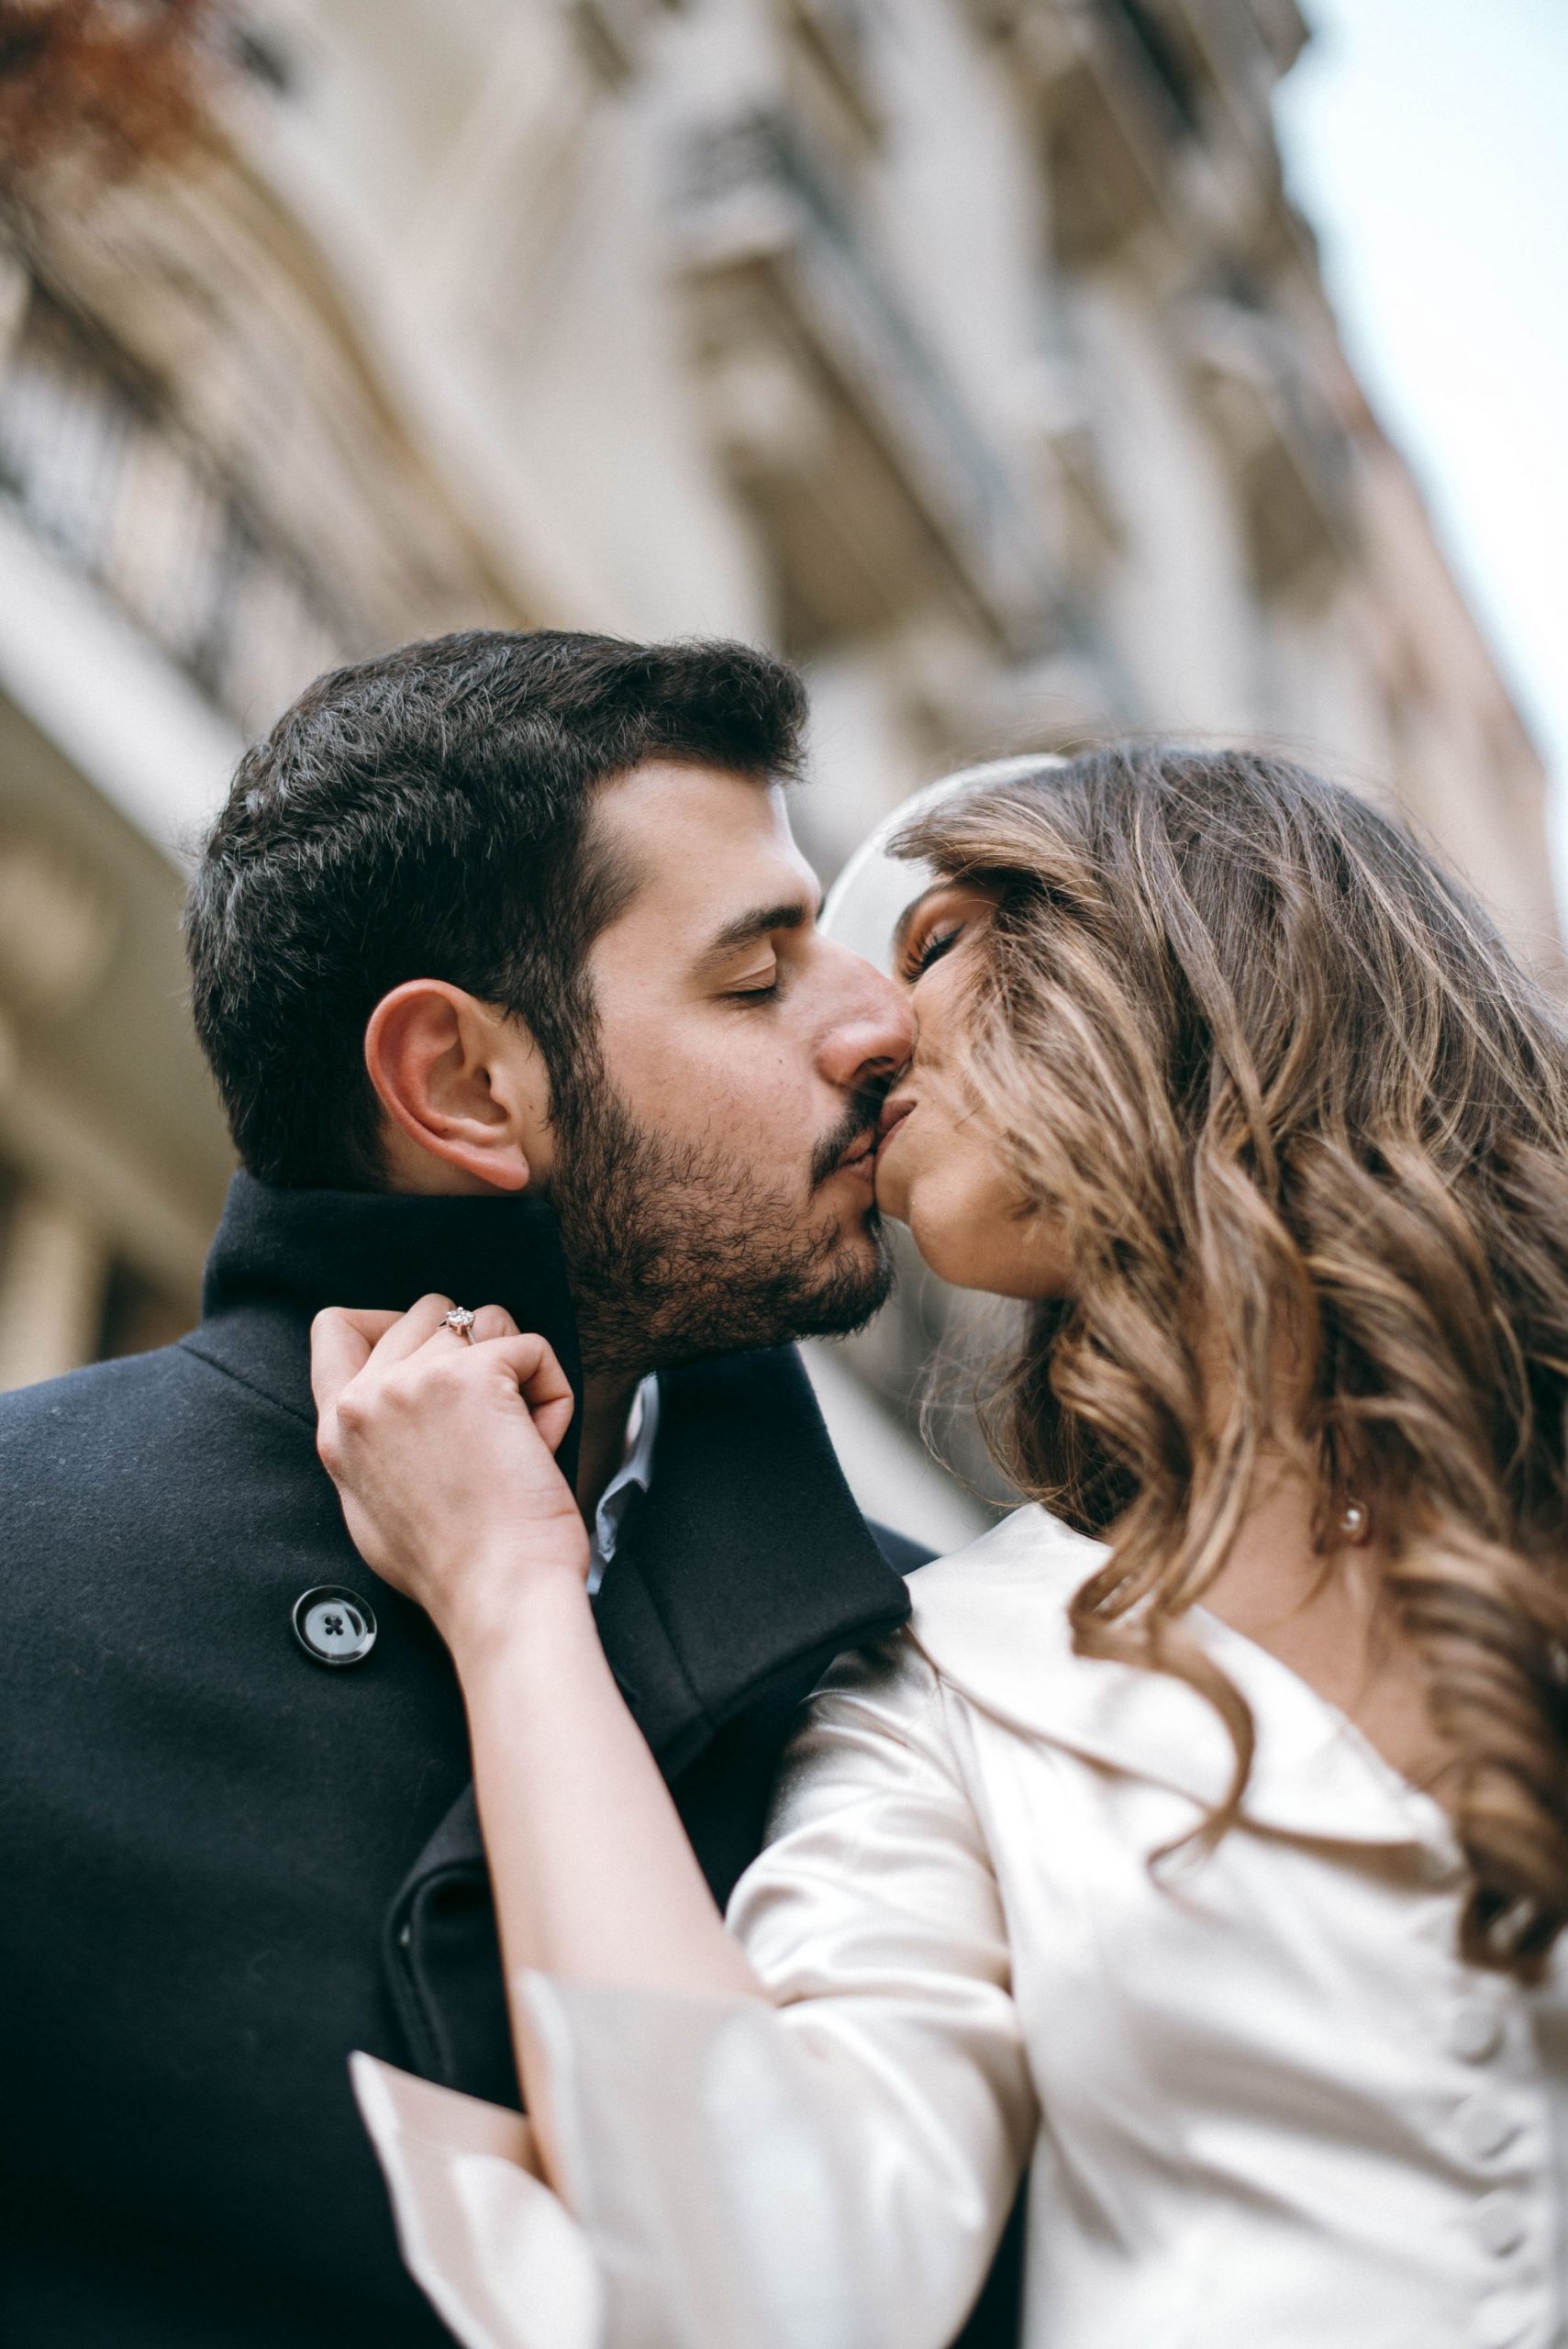 Mariage libanais à la mairie du 16éme arrondissement de paris.